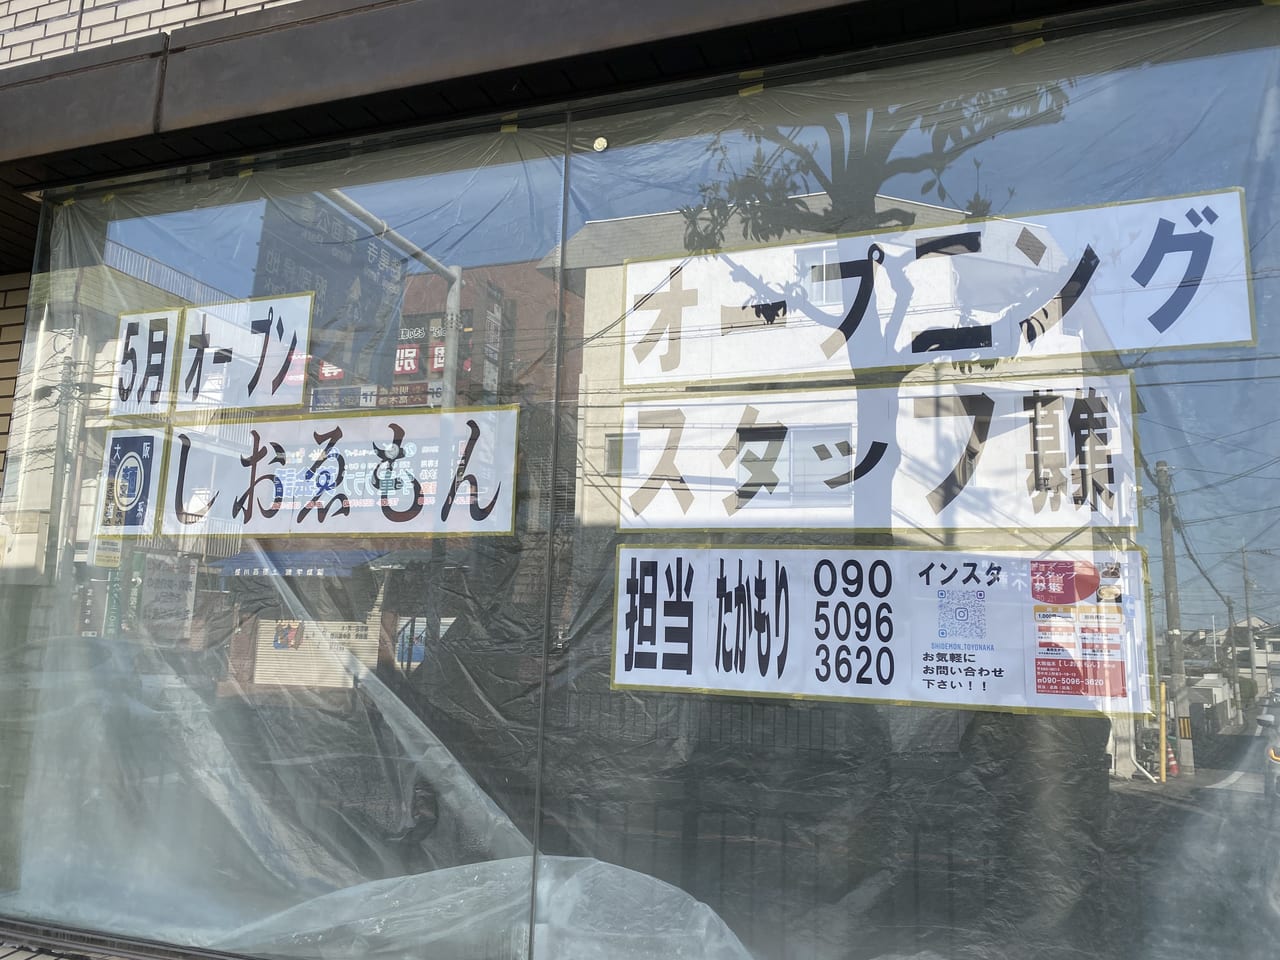 豊中市 上野東にラーメン店ができるようです しおゑもん豊中店 21年5月オープン予定 号外net 豊中市